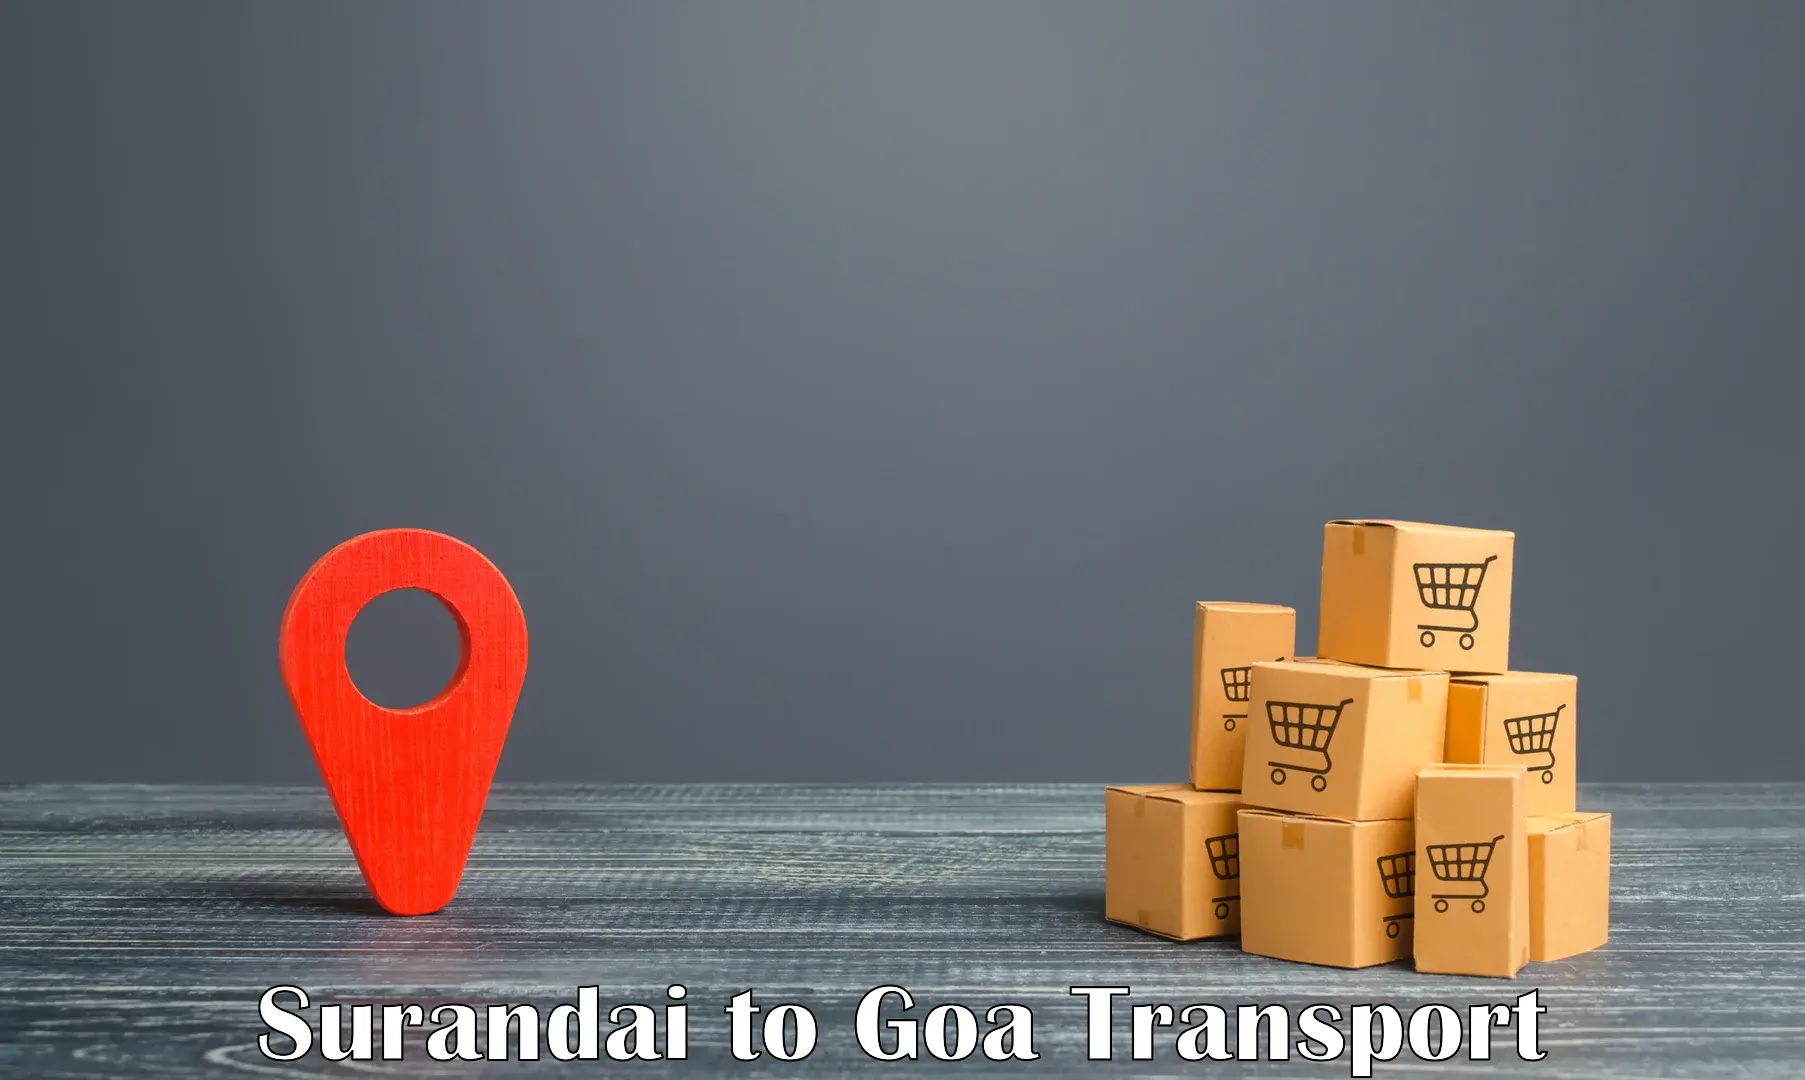 Logistics transportation services Surandai to Vasco da Gama